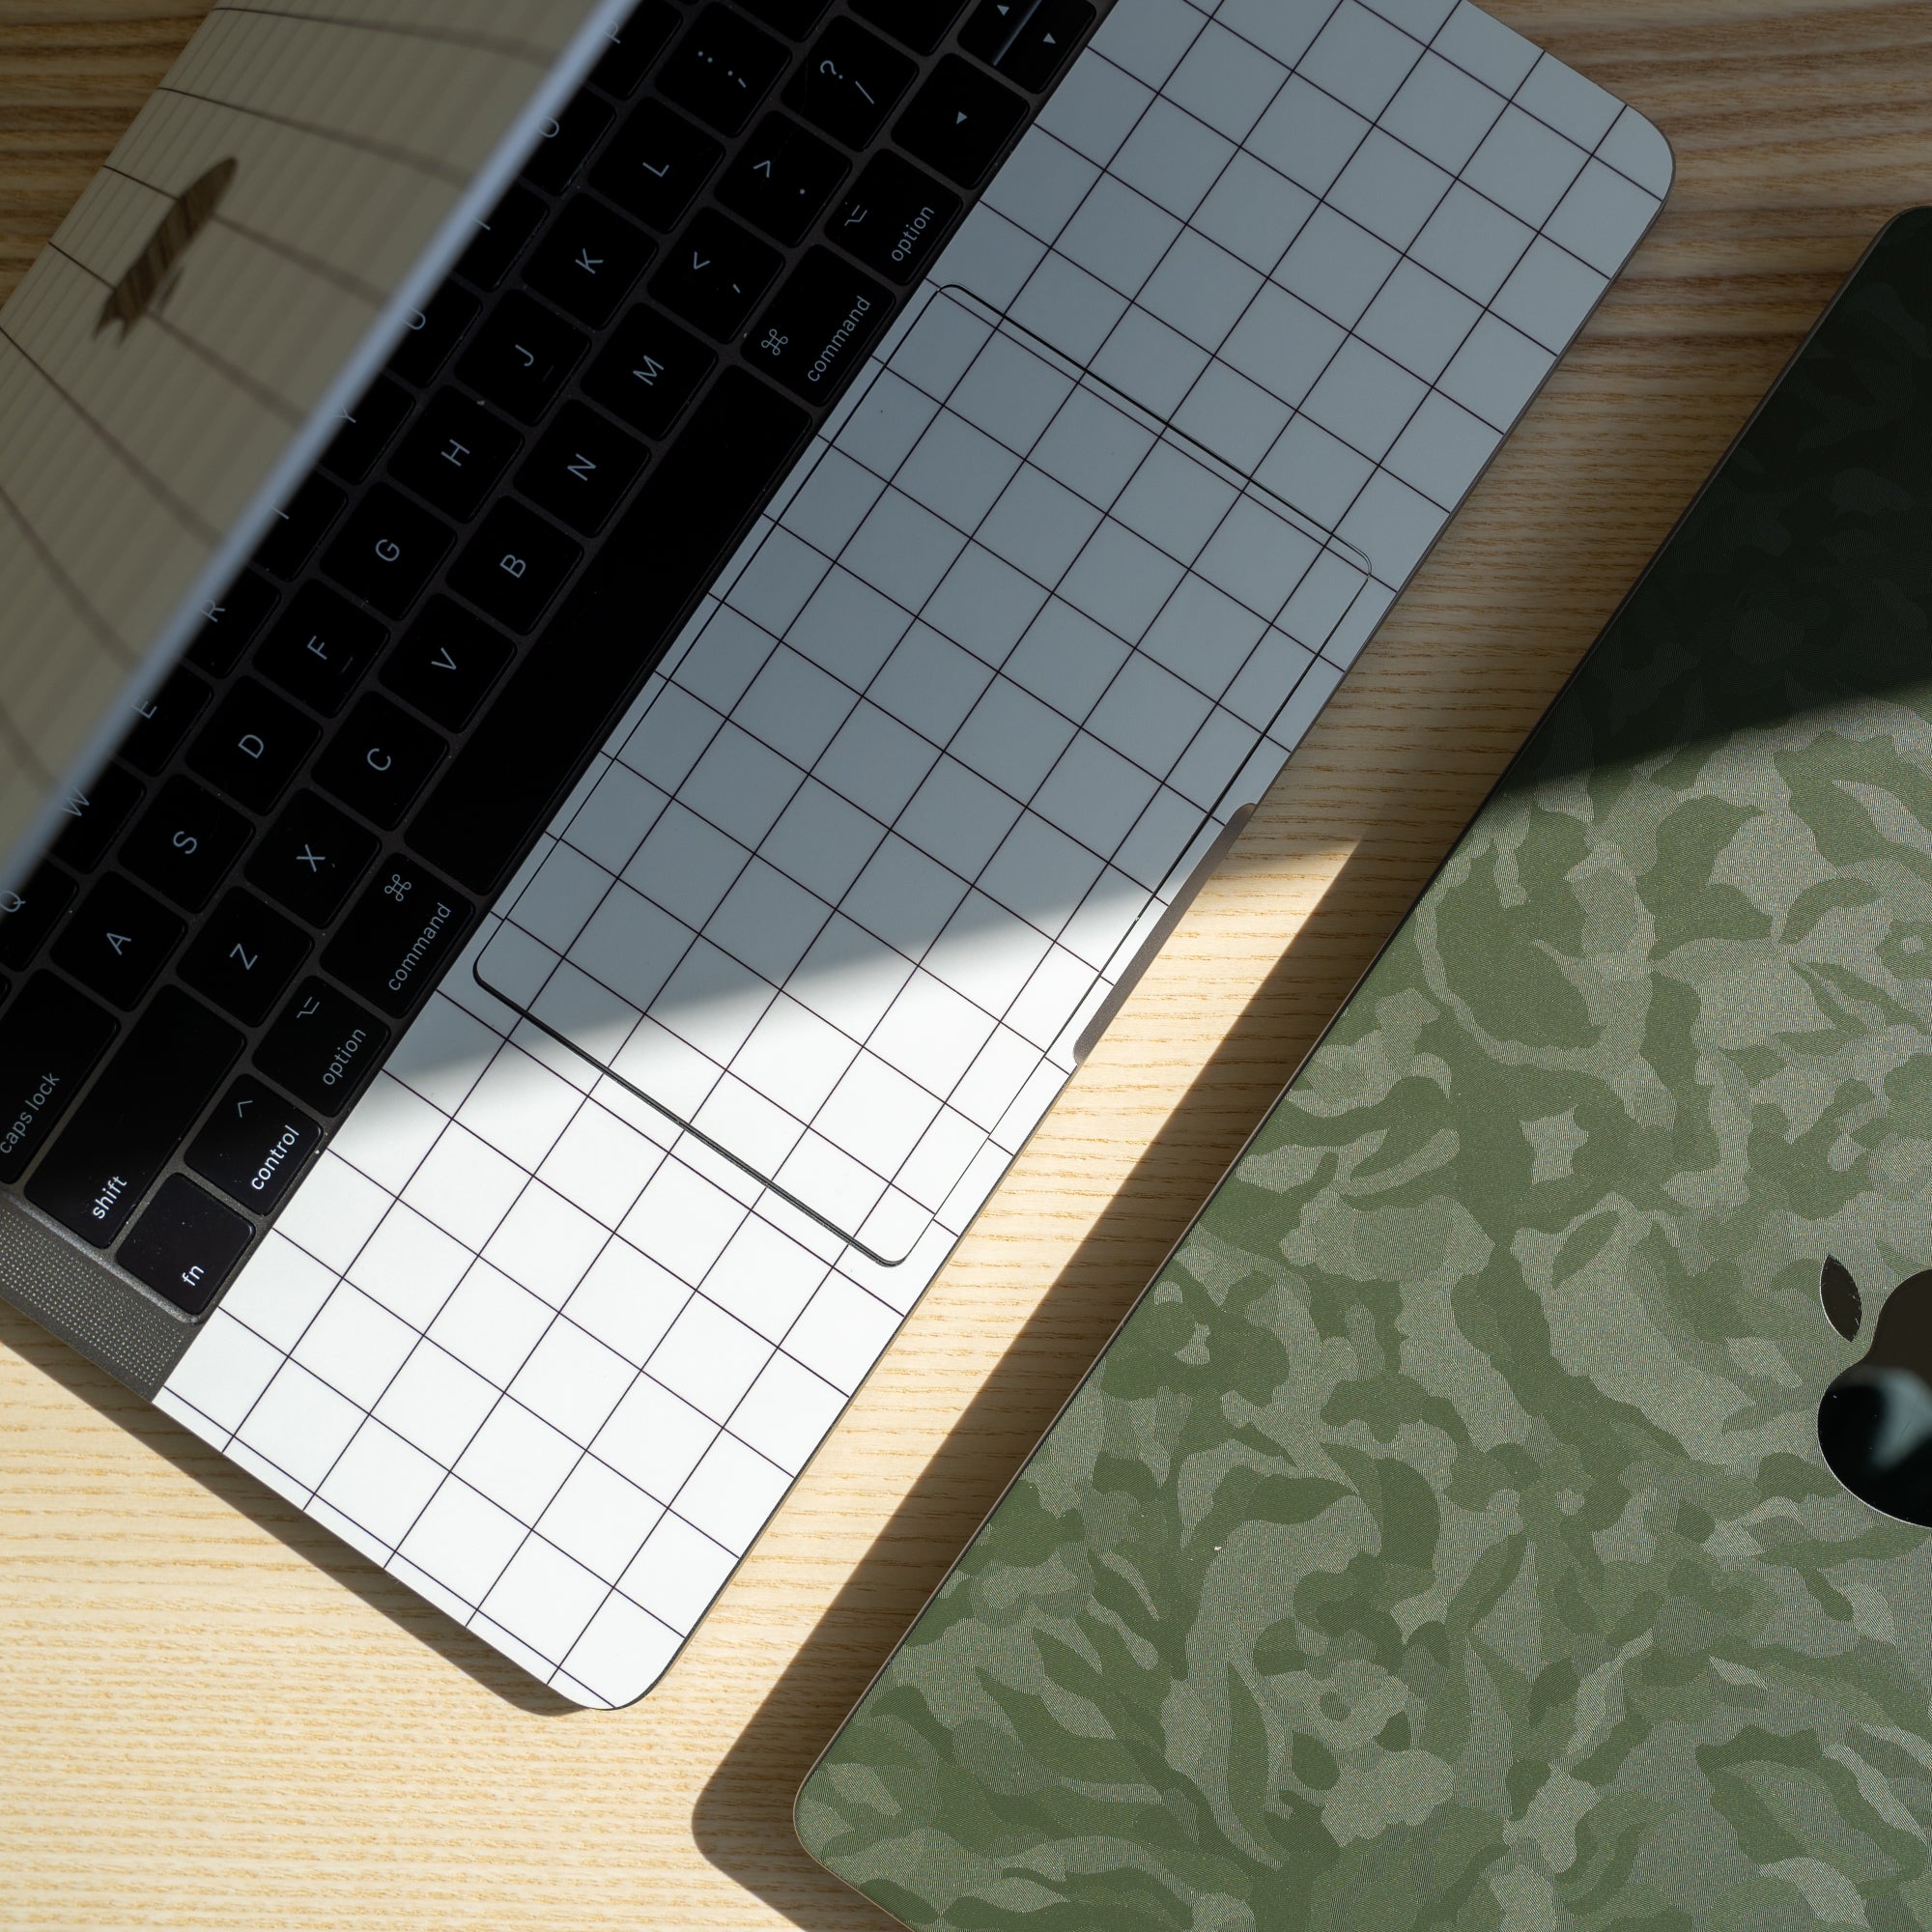 White Grid Full Coverage MacBook Skin and Green Camo Top MacBook Skin